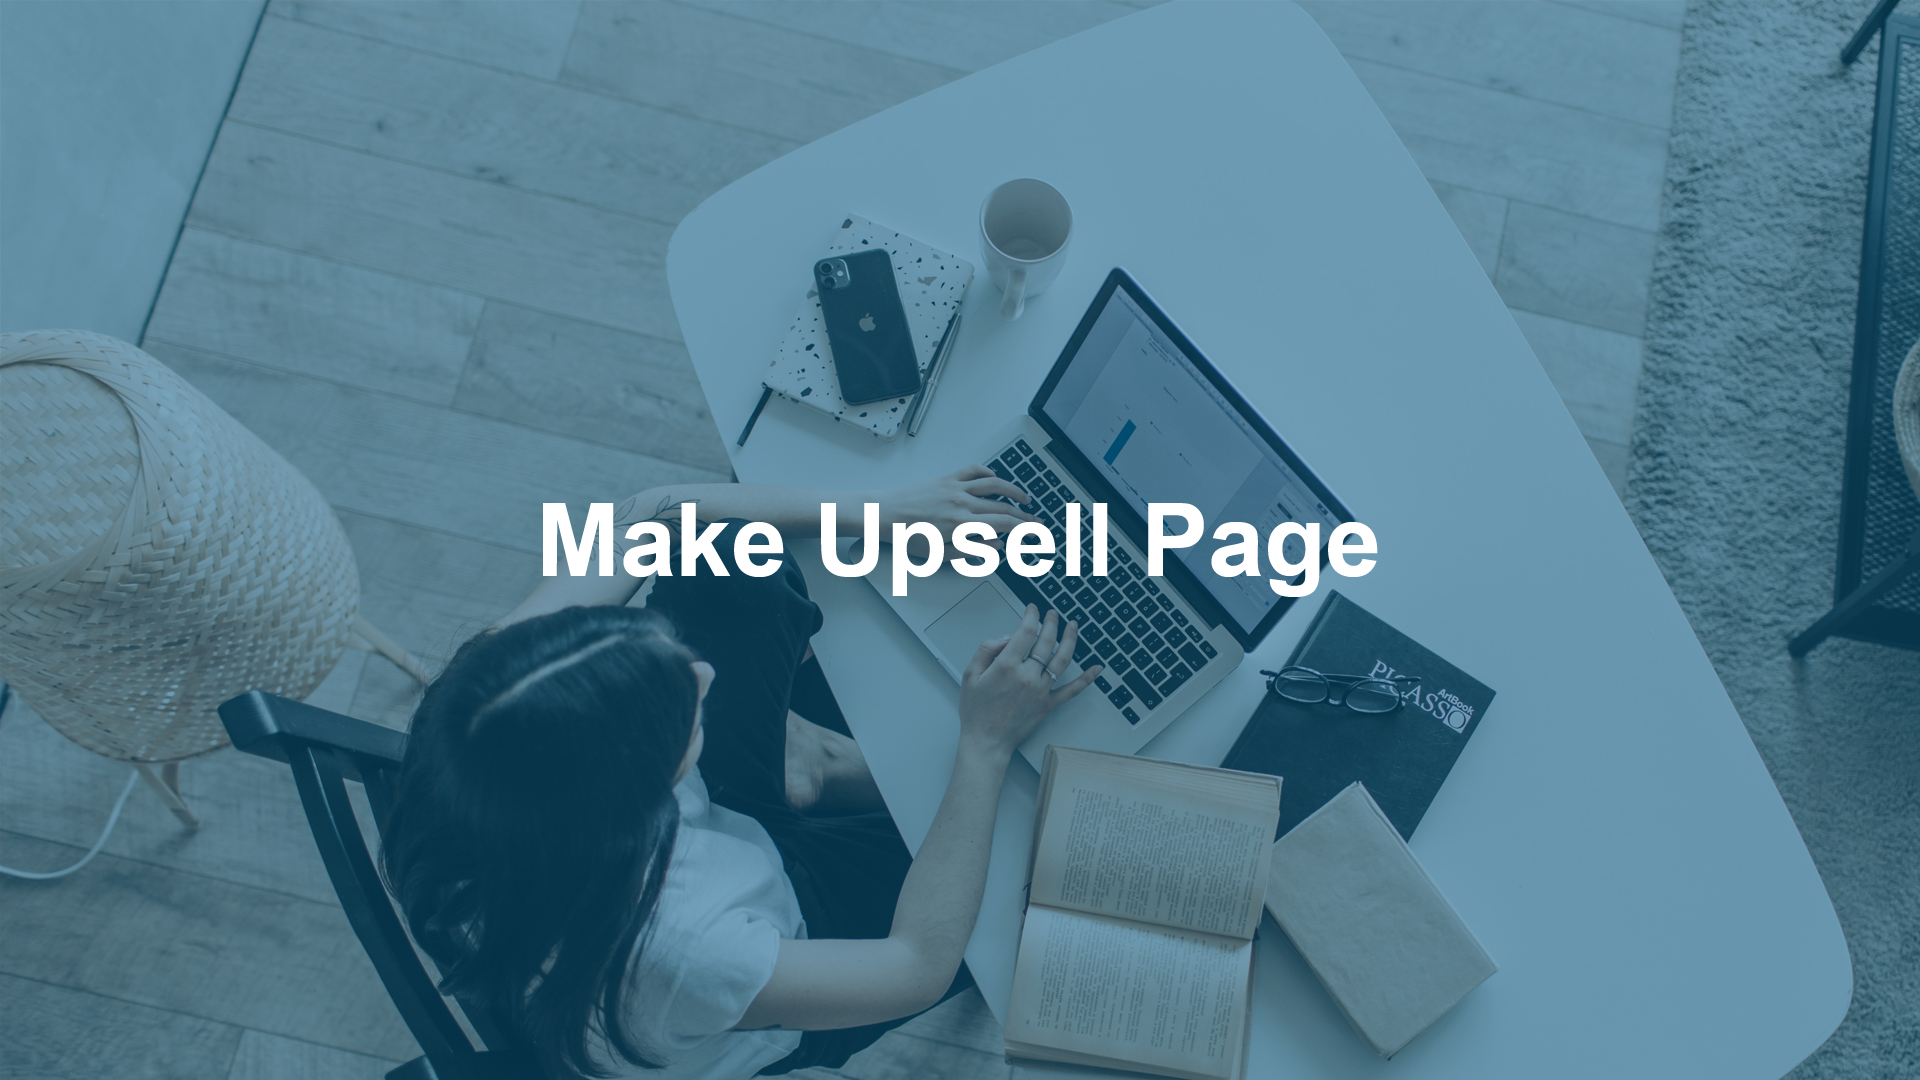 Make Upsell Page